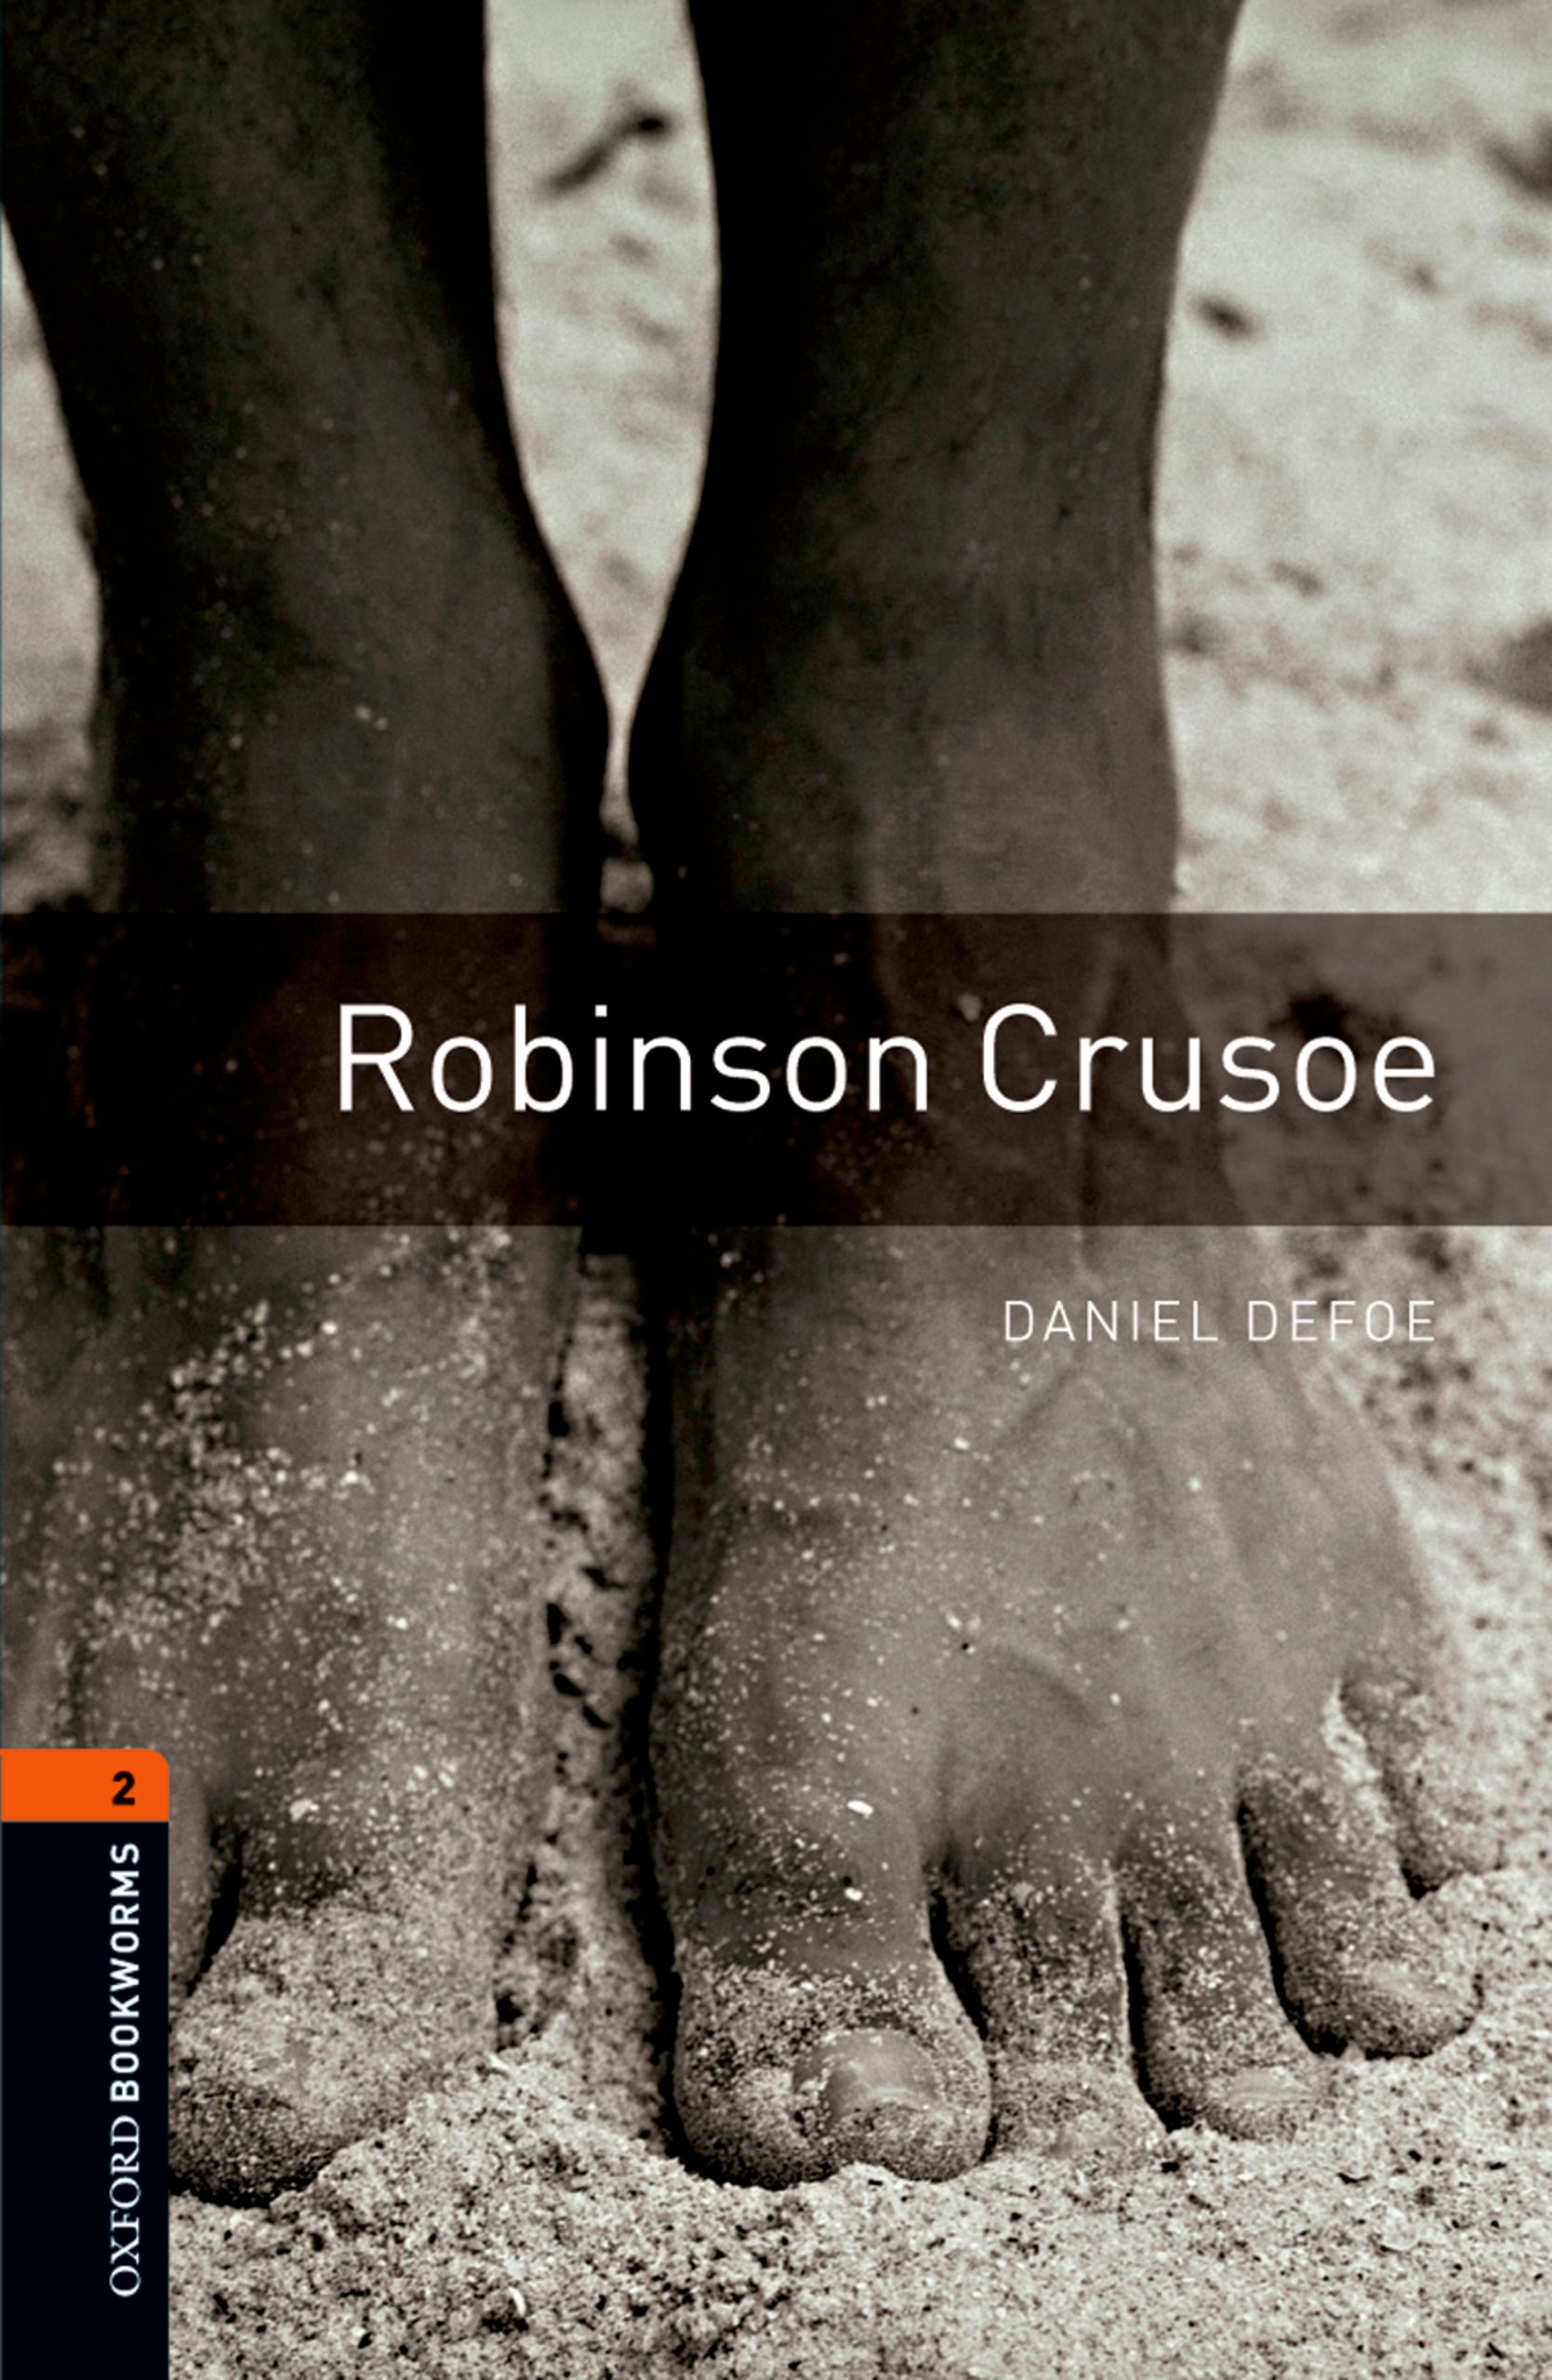 Книга Robinson Crusoe из серии , созданная Daniel Defoe, может относится к жанру Иностранные языки, Зарубежная образовательная литература, Иностранные языки. Стоимость электронной книги Robinson Crusoe с идентификатором 23573531 составляет 405.87 руб.